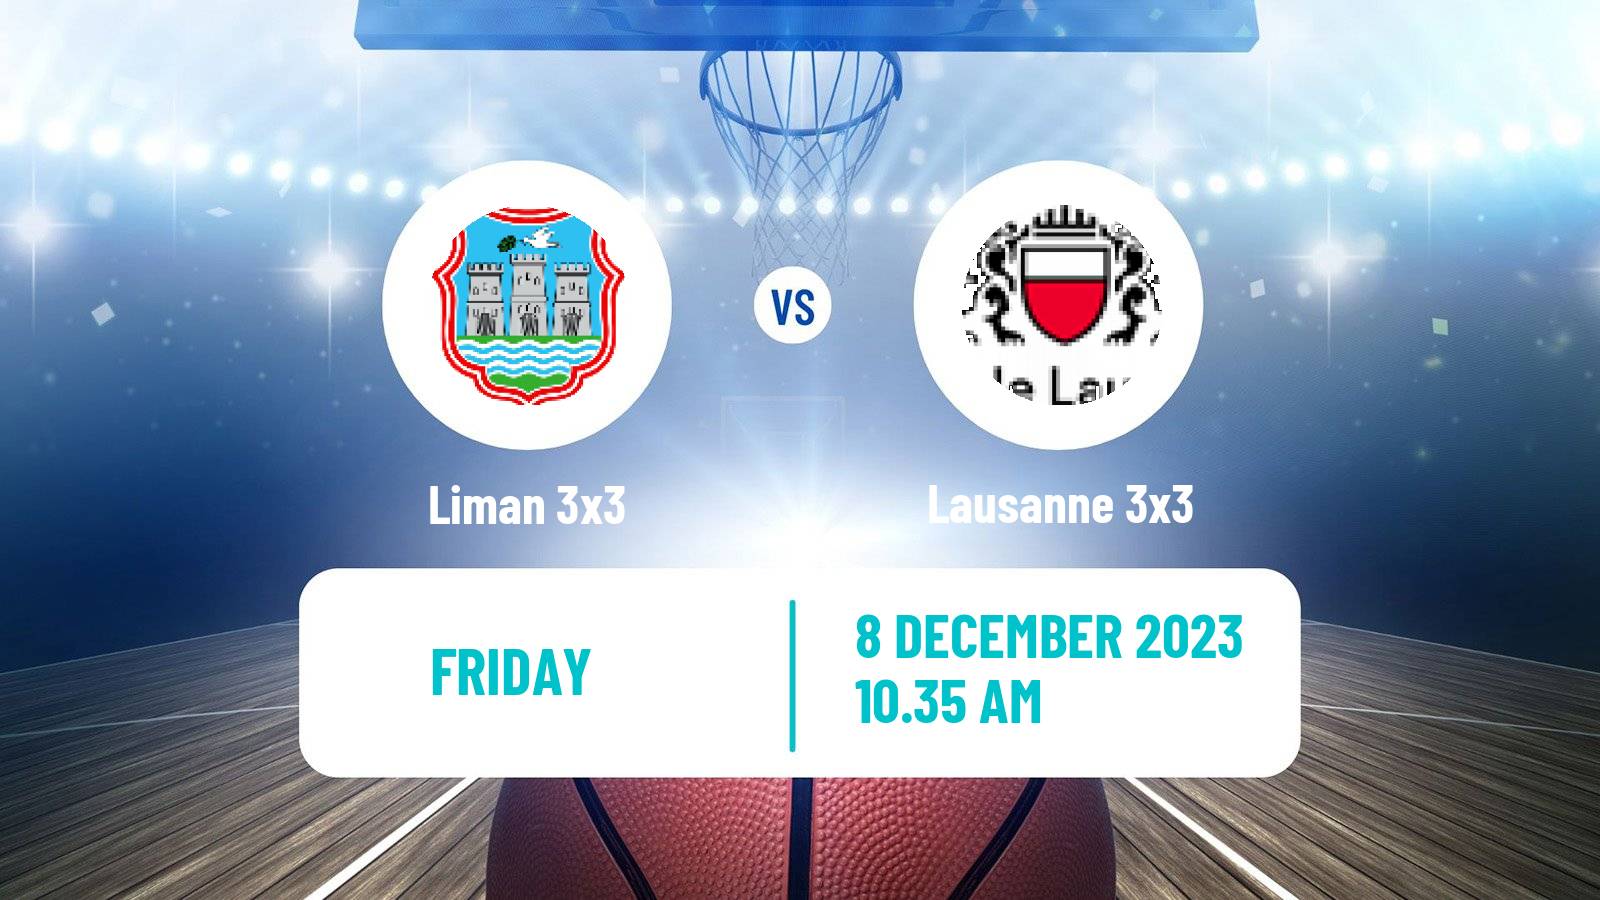 Basketball World Tour Final 3x3 Liman 3x3 - Lausanne 3x3